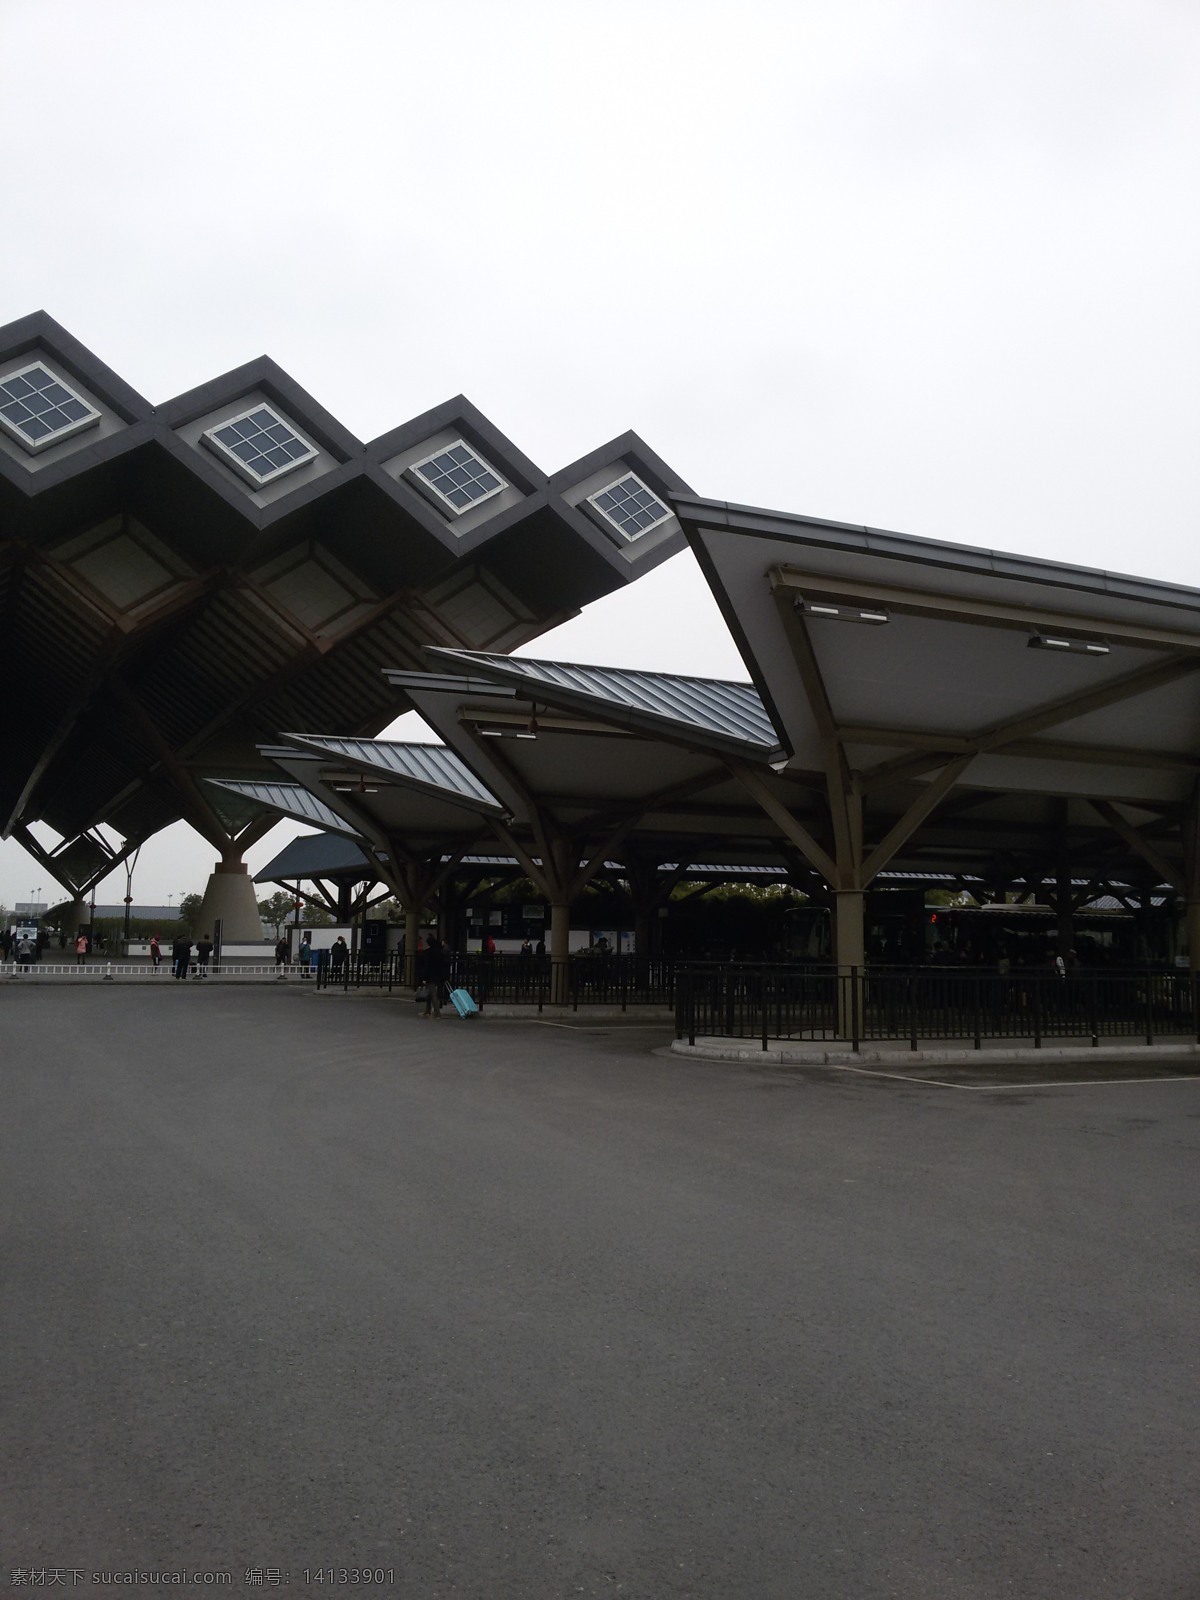 苏州火车站 苏州建筑 建筑风景 火车站 广场 自然景观 建筑景观 白色